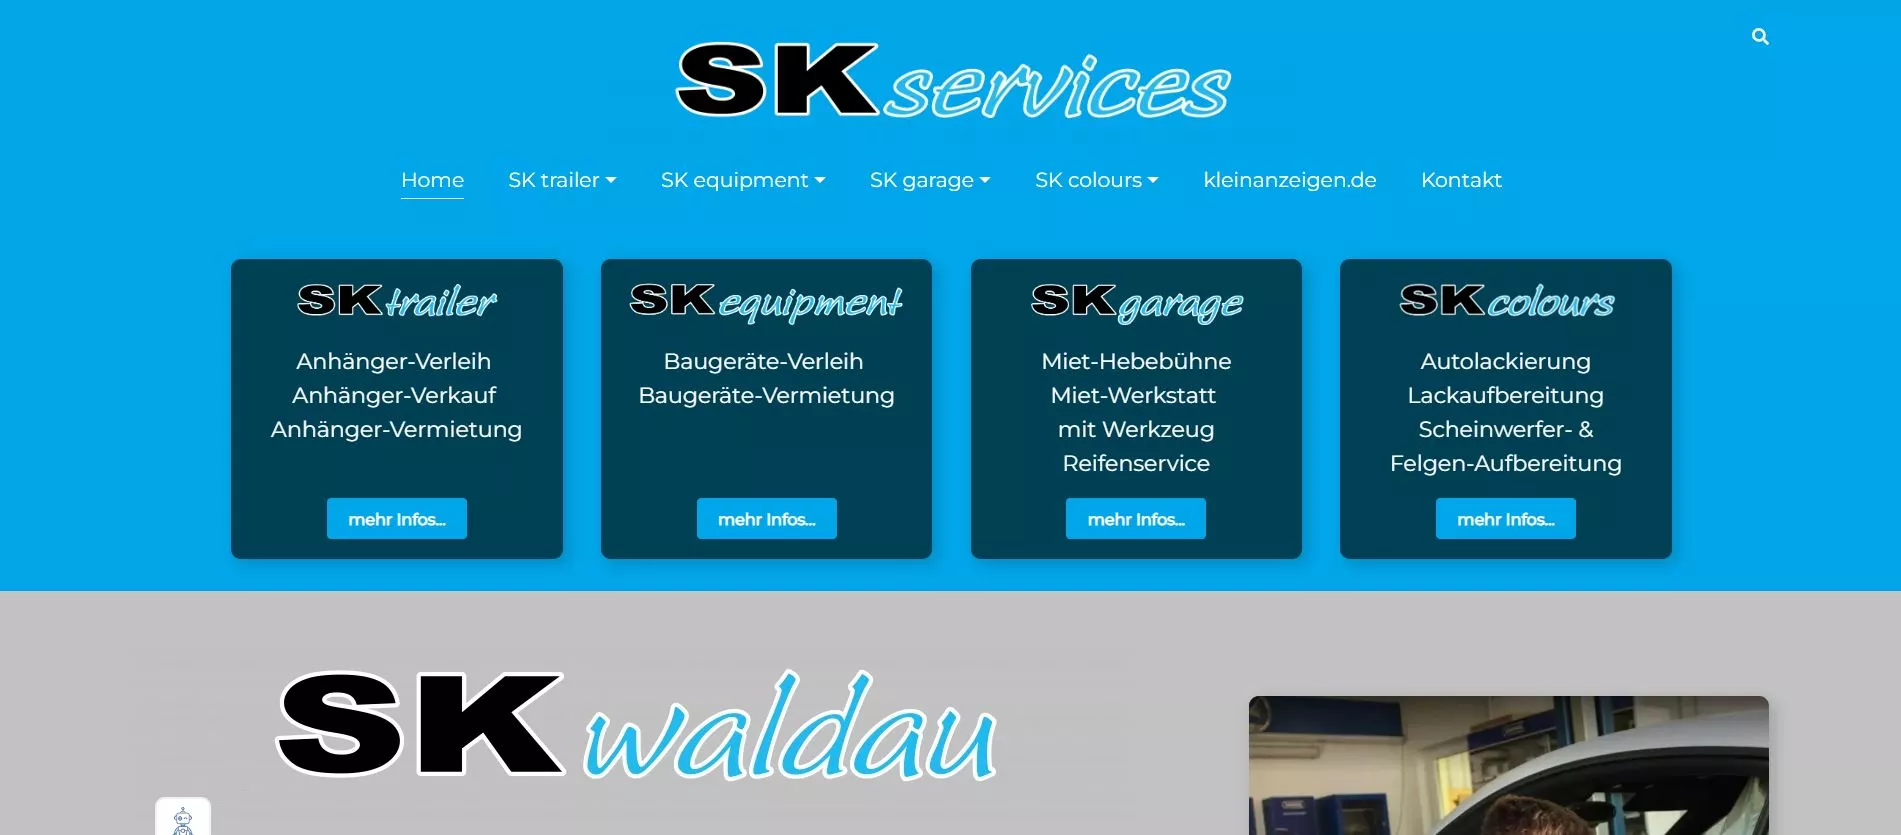 SK Colours